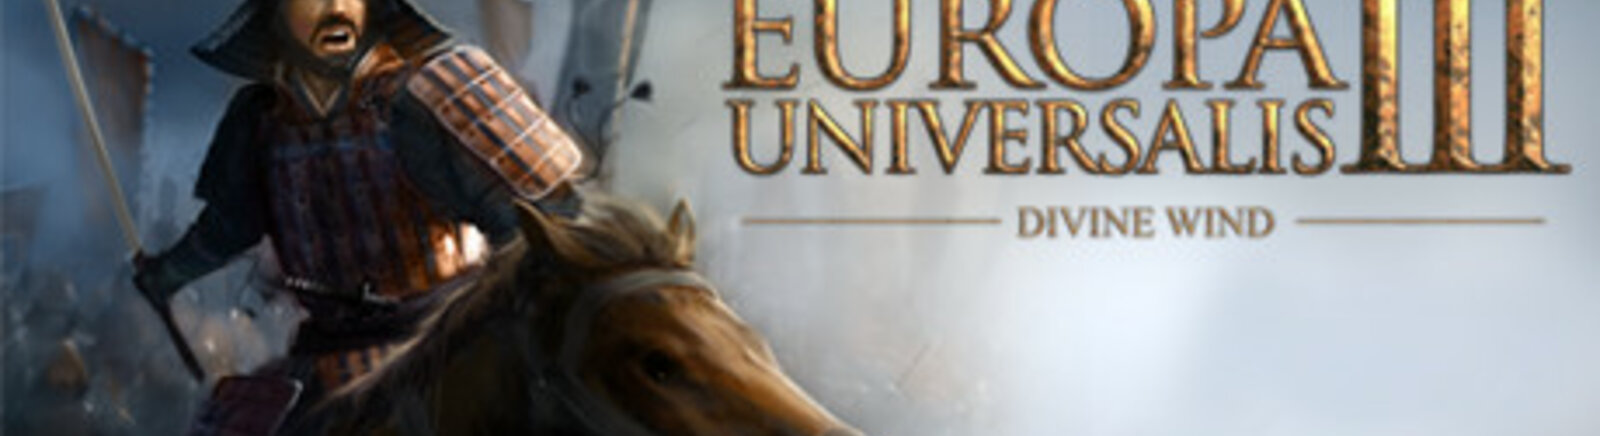 Дата выхода Europa Universalis 3: Divine Wind  на PC и Mac в России и во всем мире